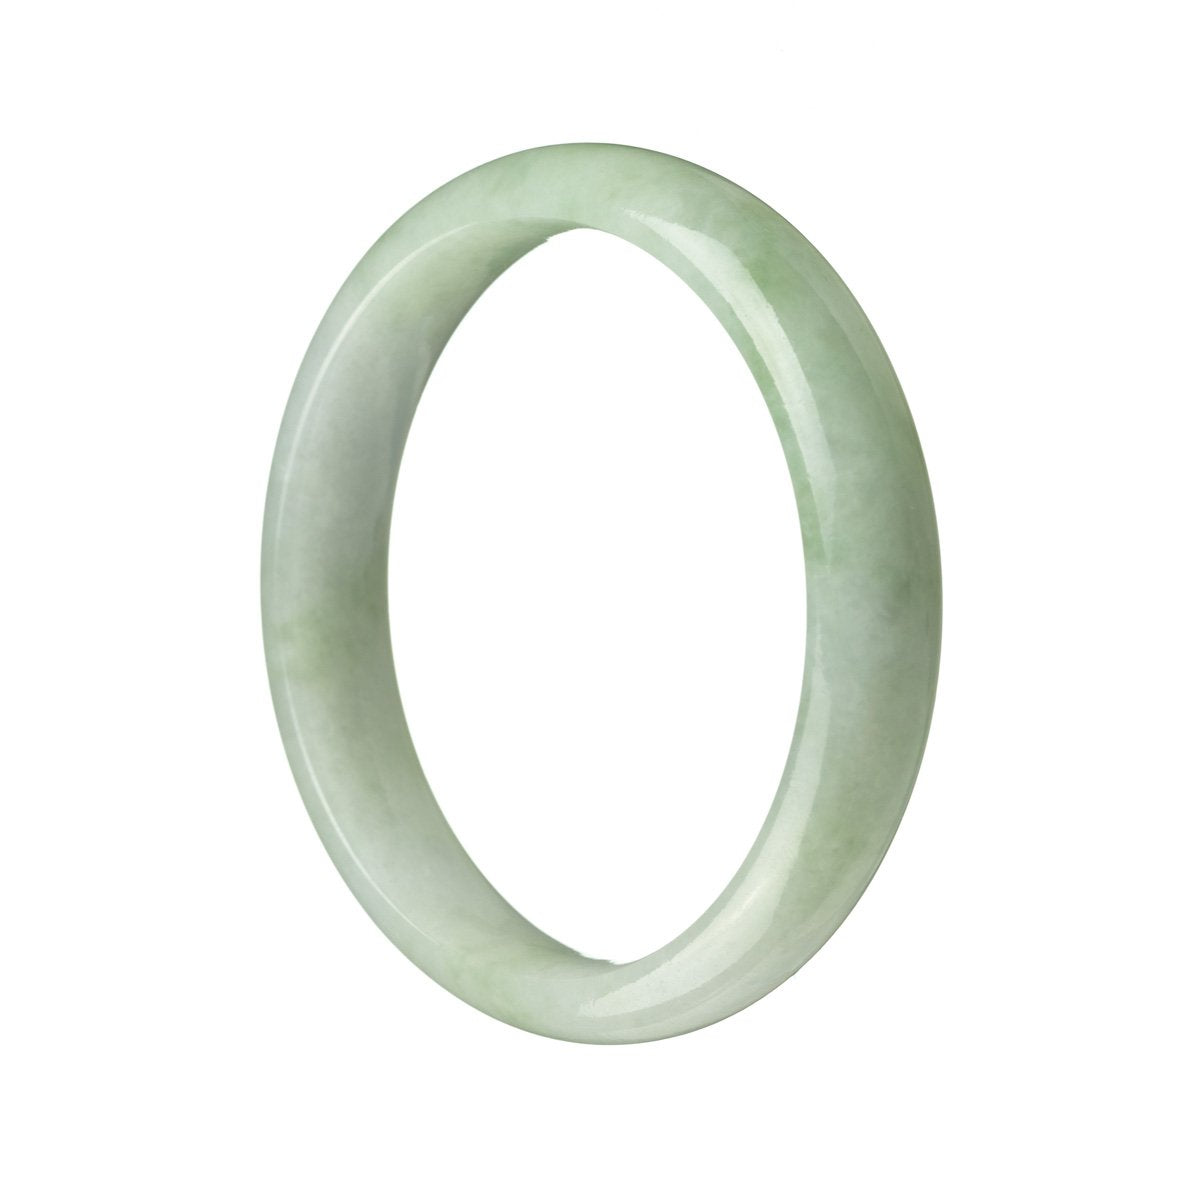 A half-moon shaped, light green jade bangle bracelet with a polished finish.